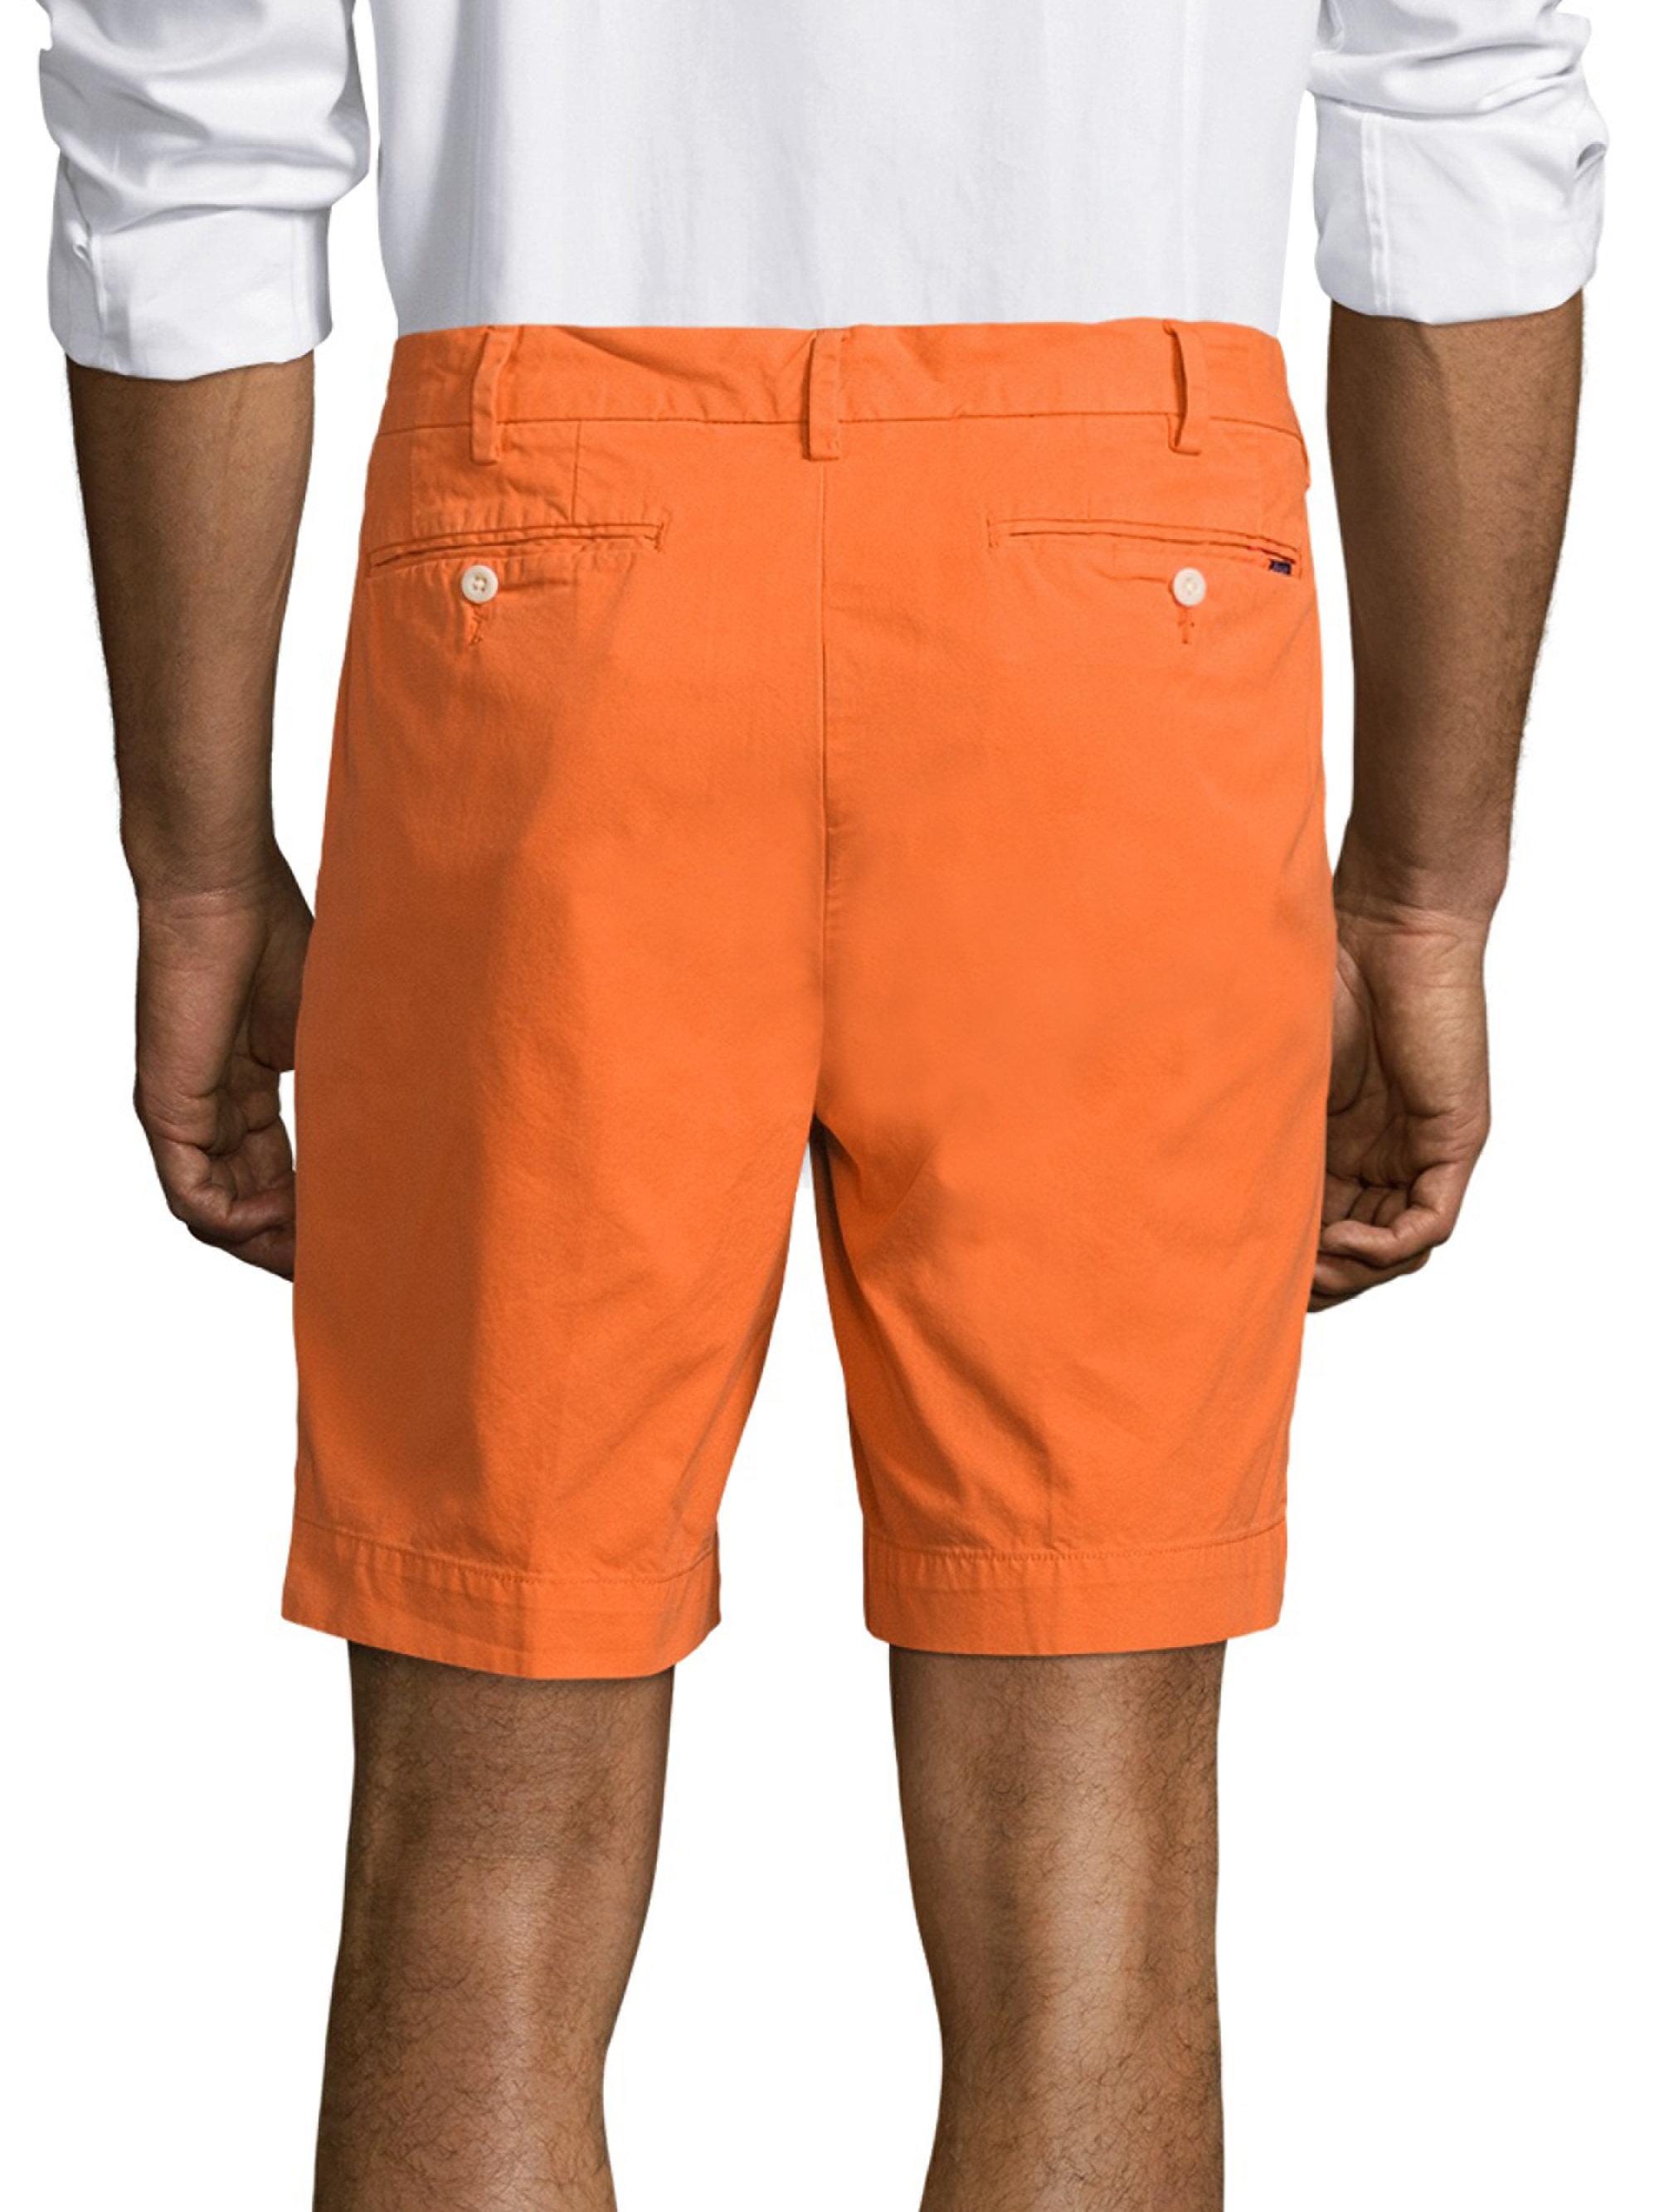 Lyst - Polo Ralph Lauren Newport Shorts in Orange for Men